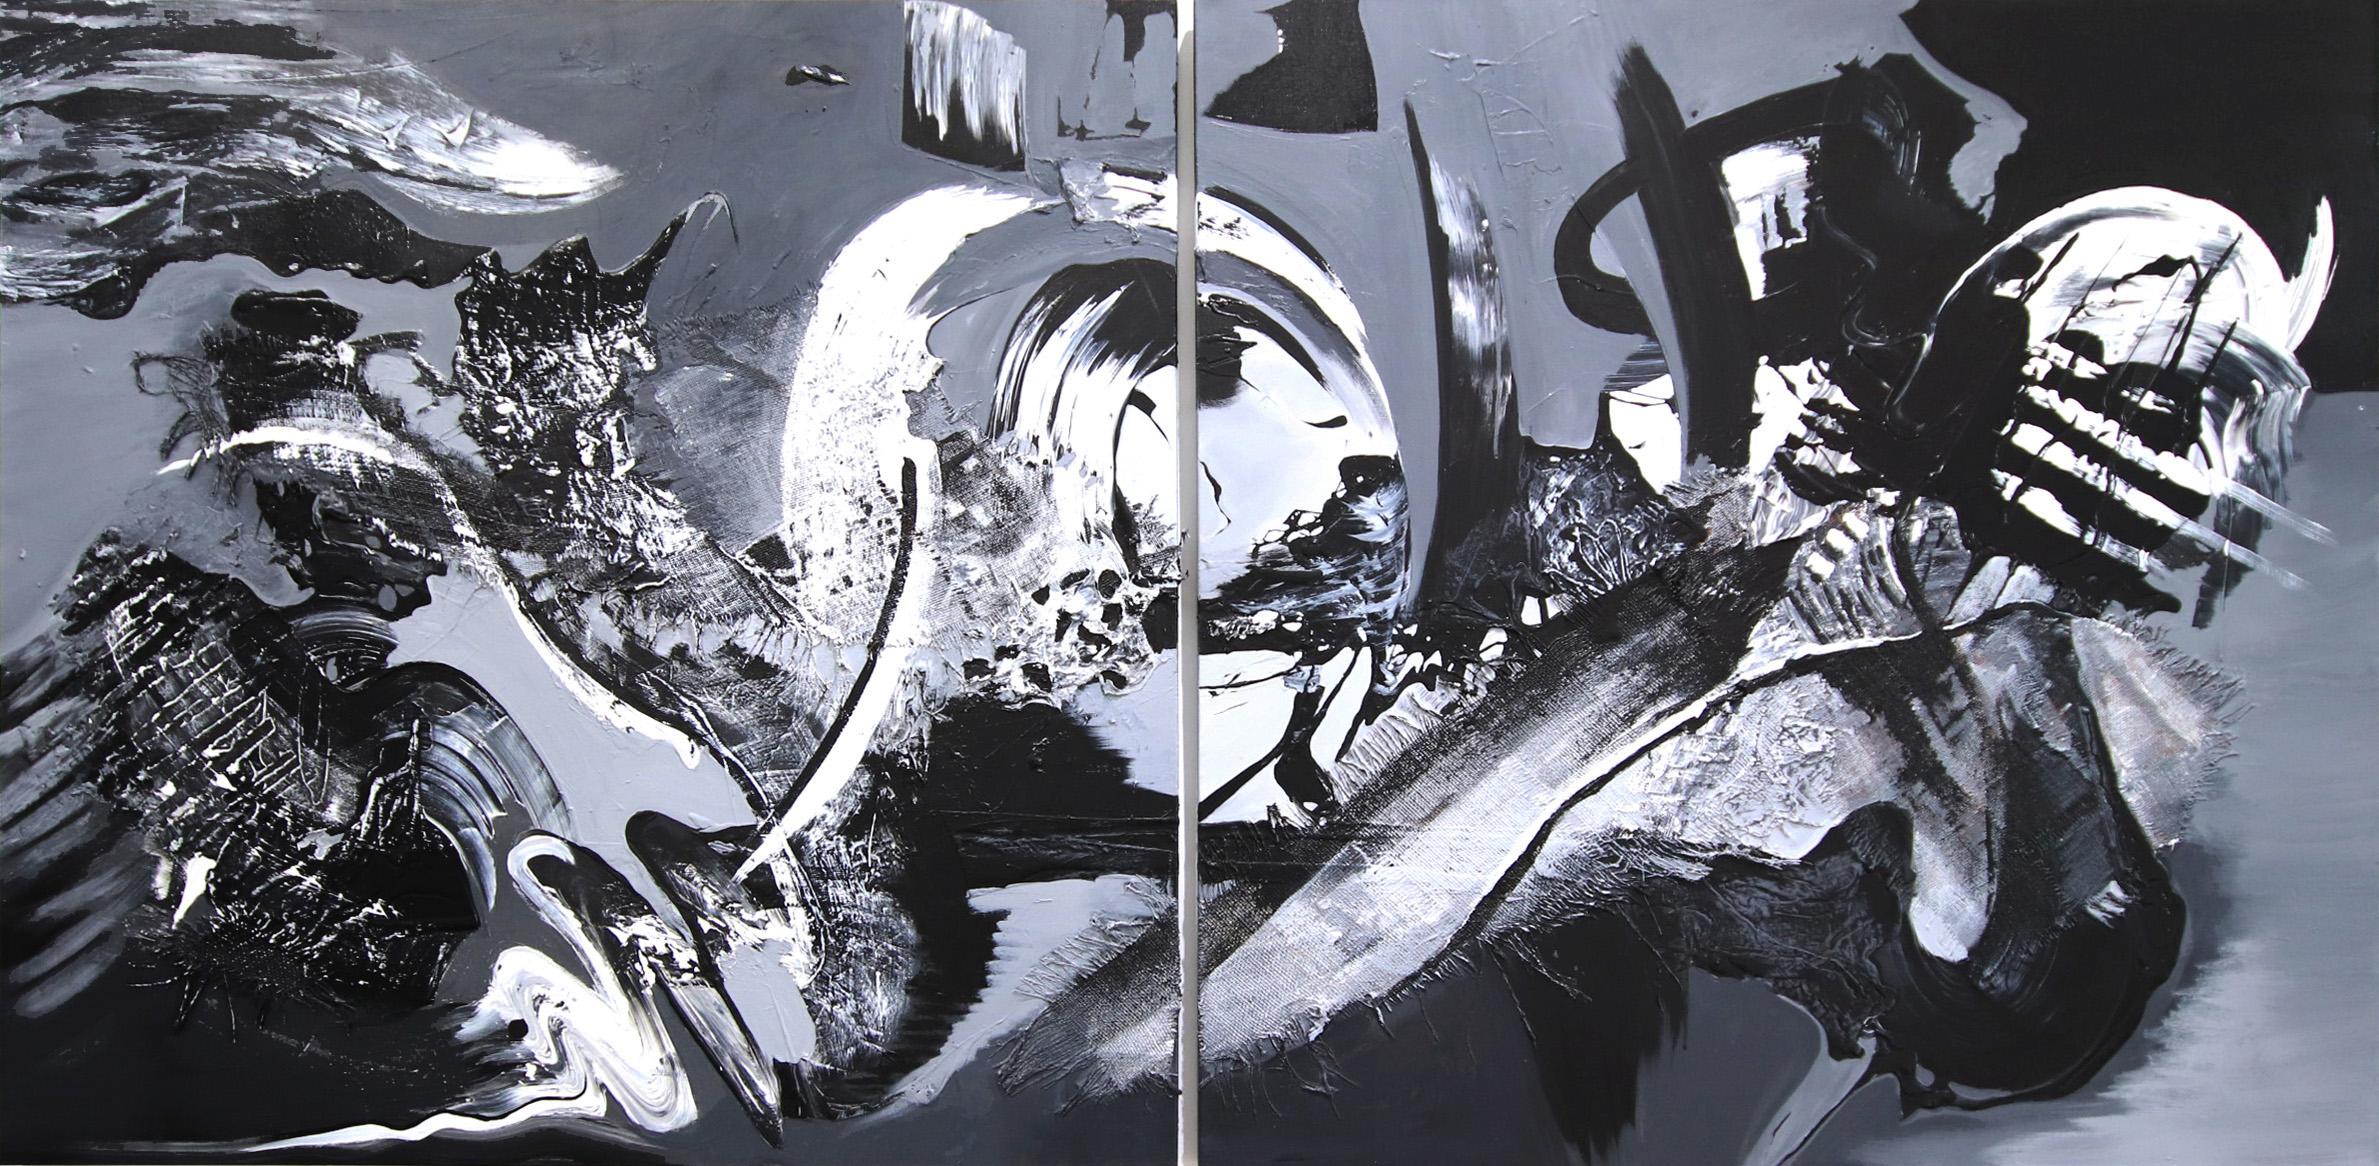 Abstract Painting Gail Titus - Les forces génératrices (Diptyque) - œuvre d'art abstraite à grande échelle